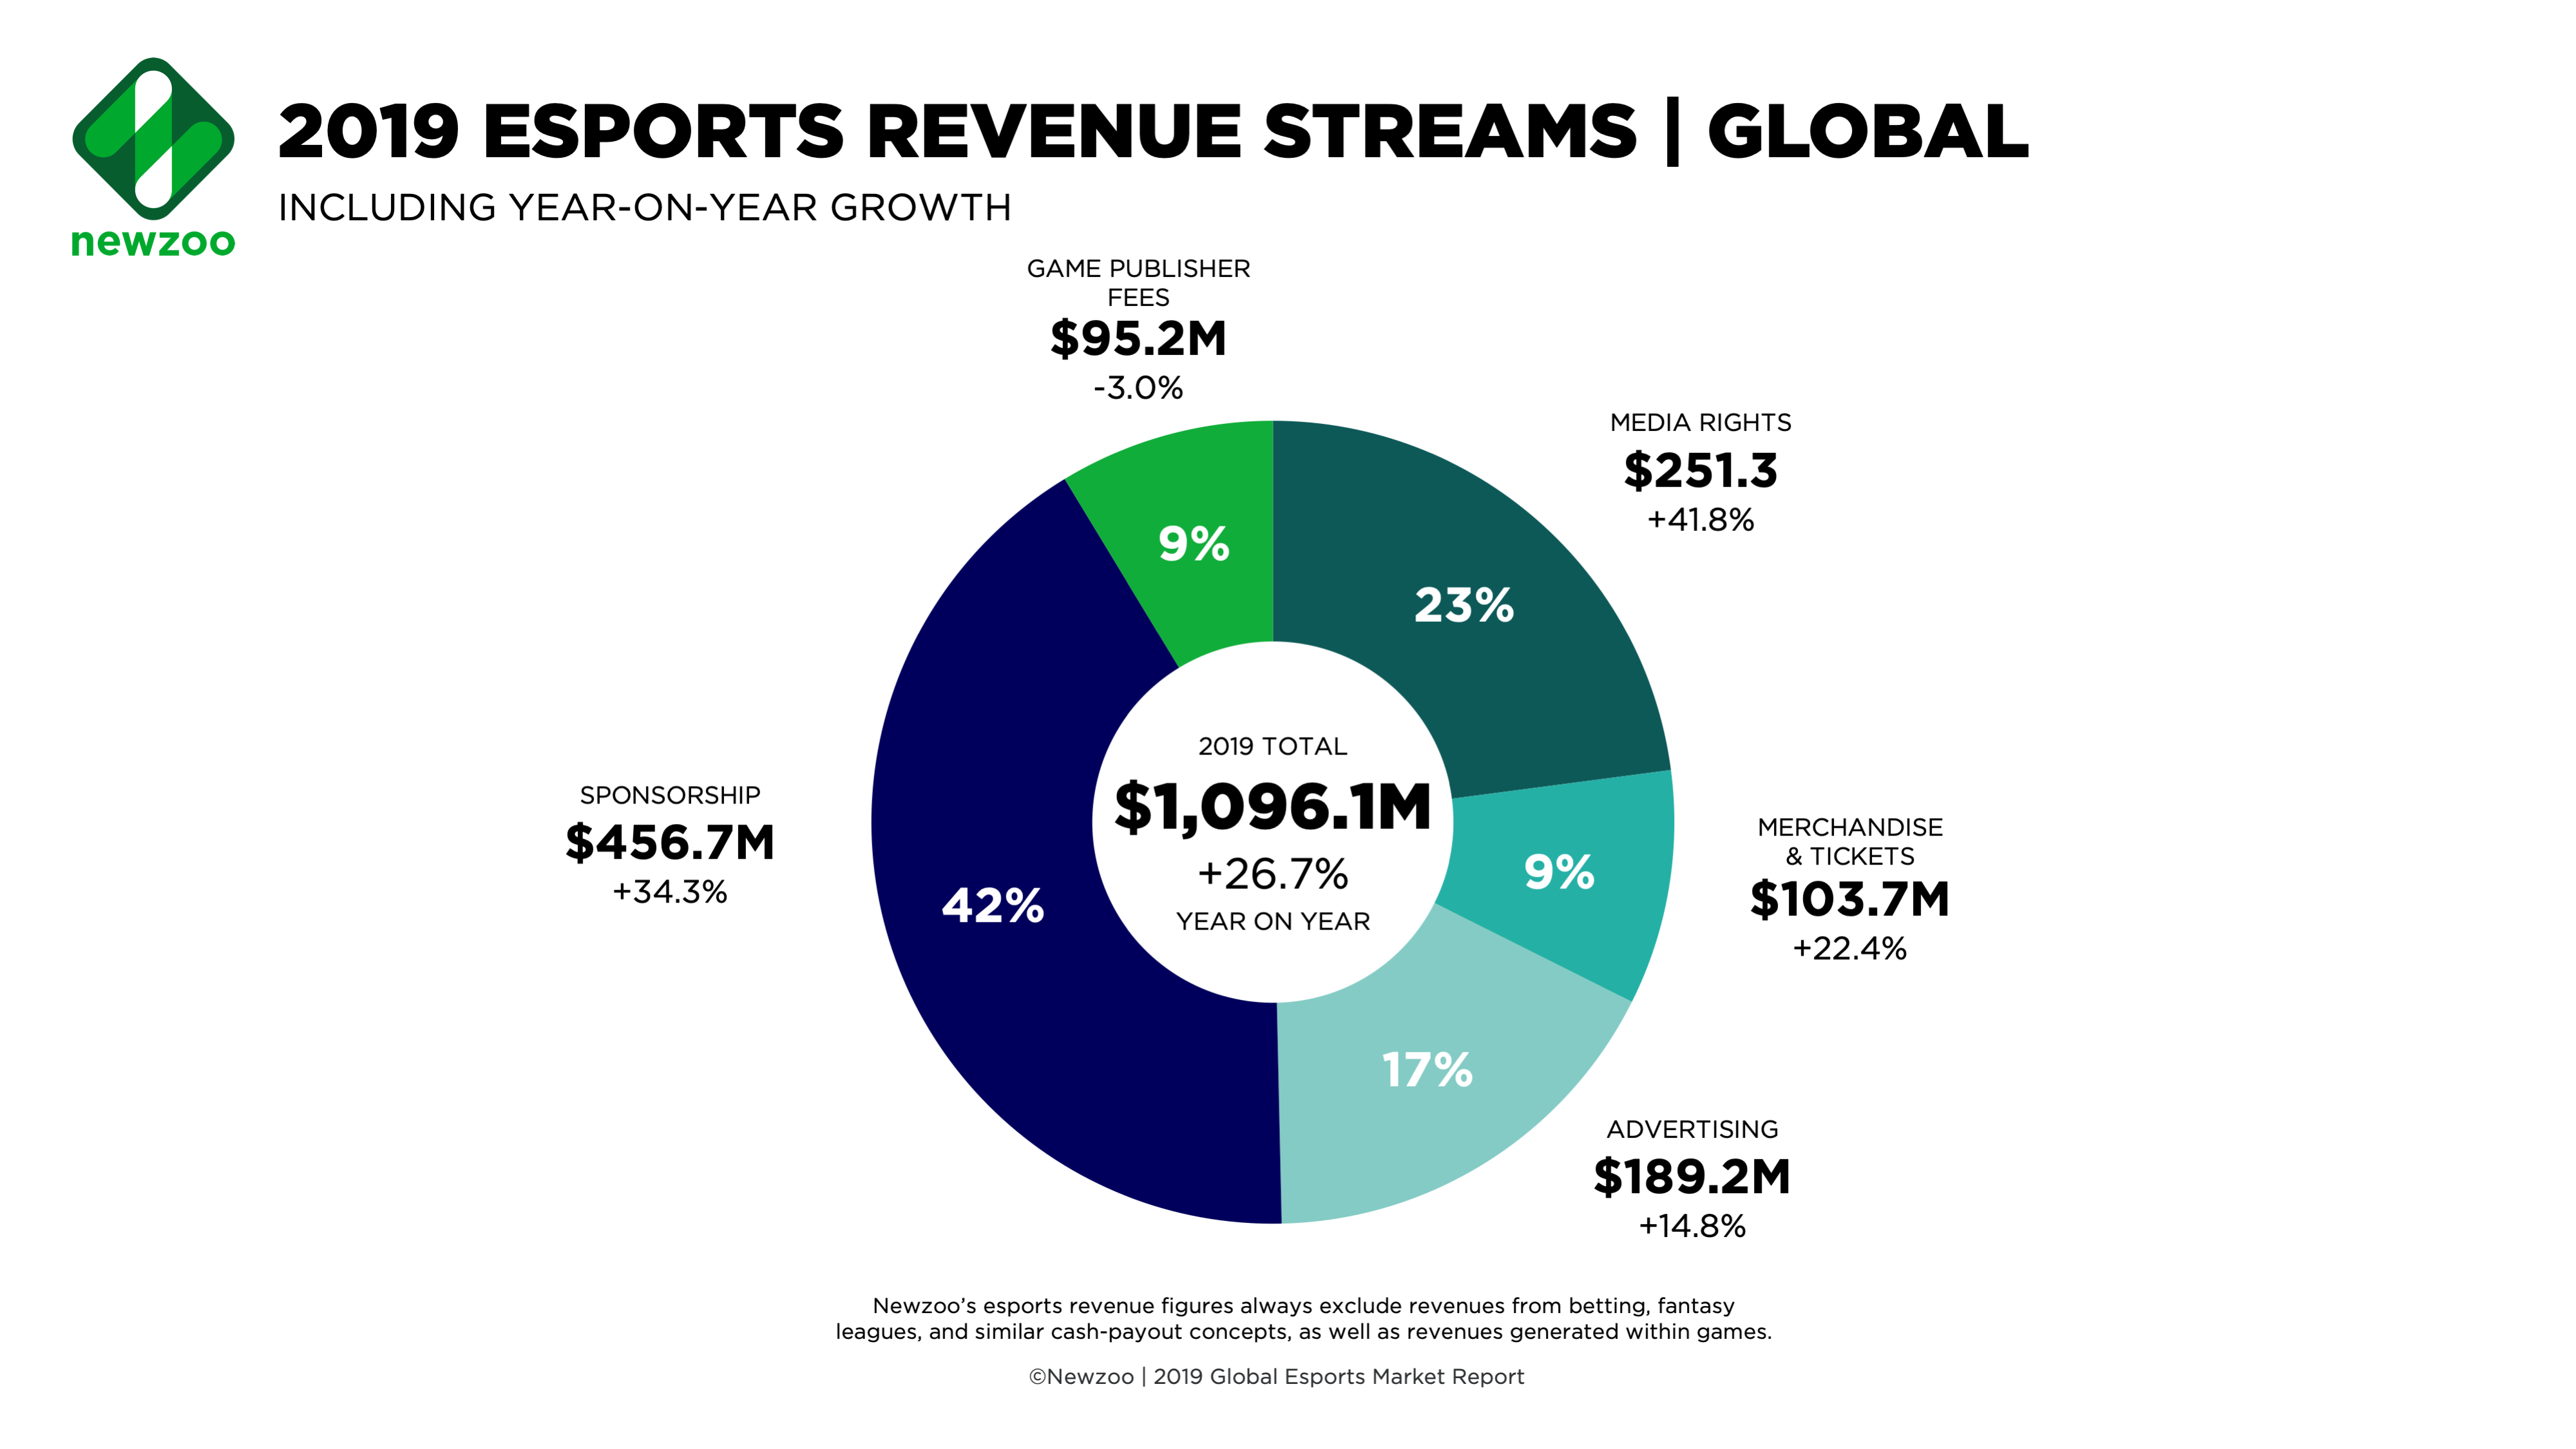 E-Spor gelirleri bu yıl 1 milyar dolar seviyesini geride bırakacak